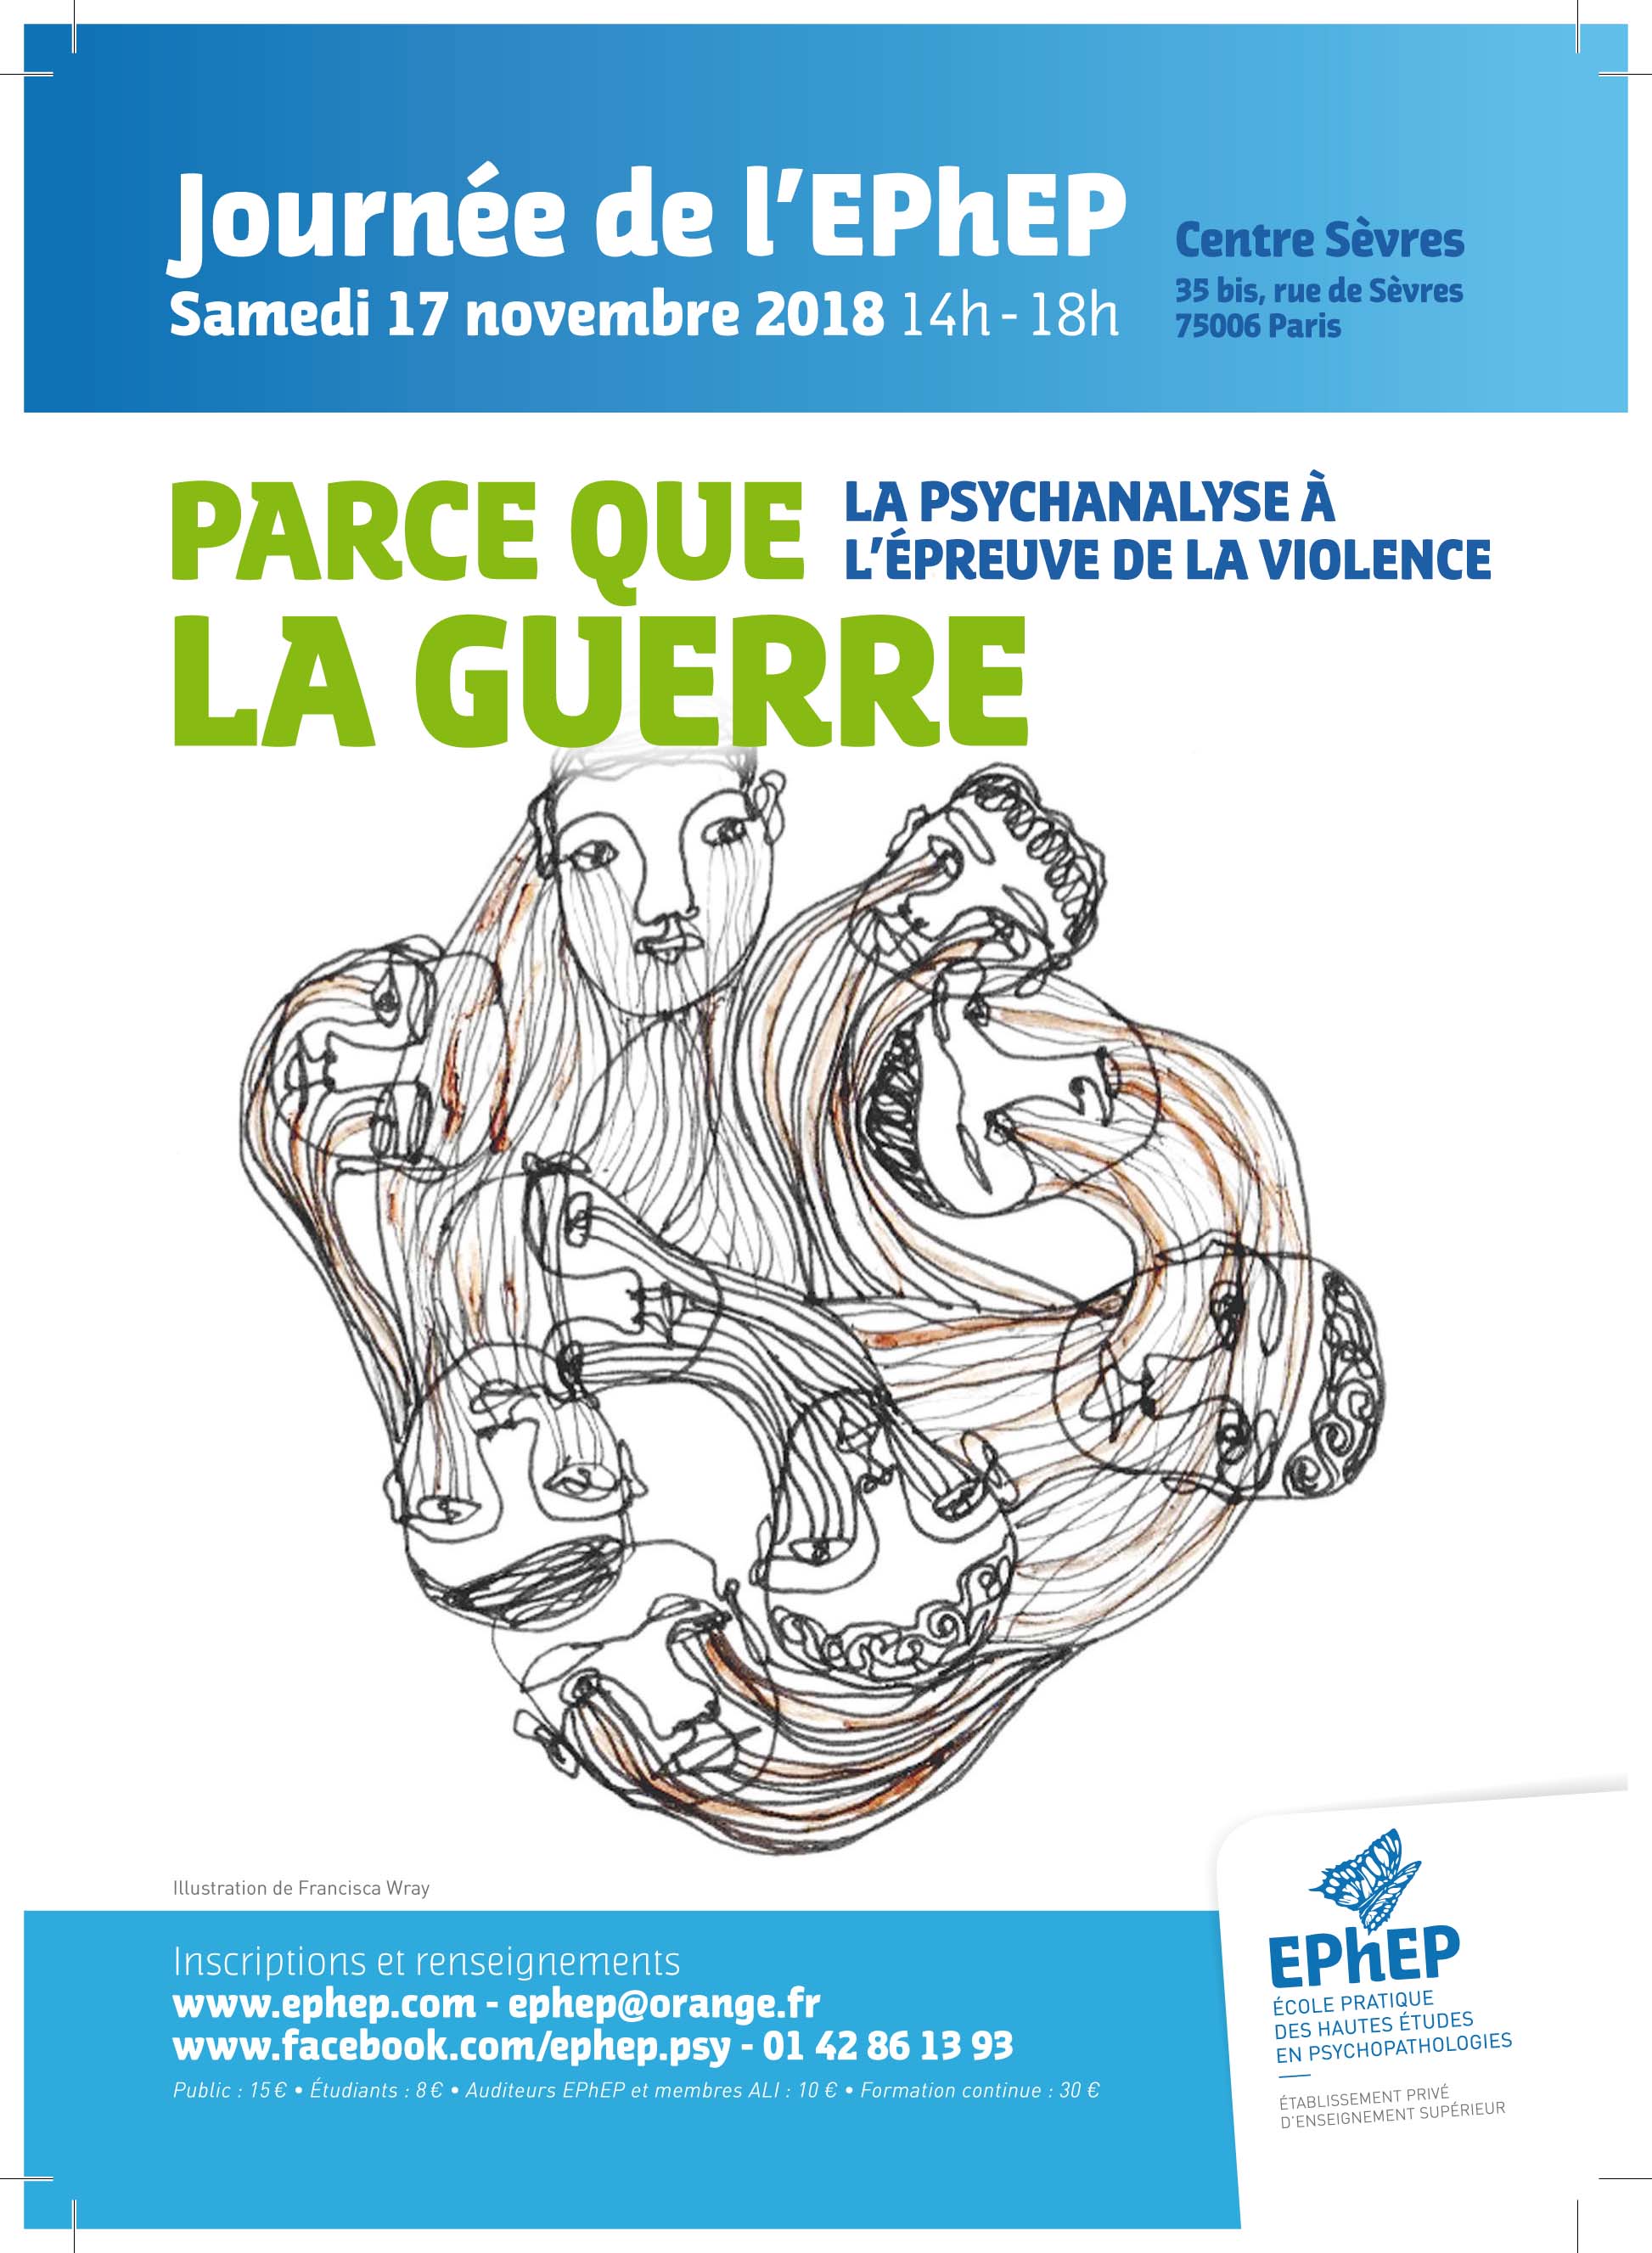 Affiche de la journée "Parce que la guerre - la psychanalyse à l'épreuve de la violence" le 17/11/2018